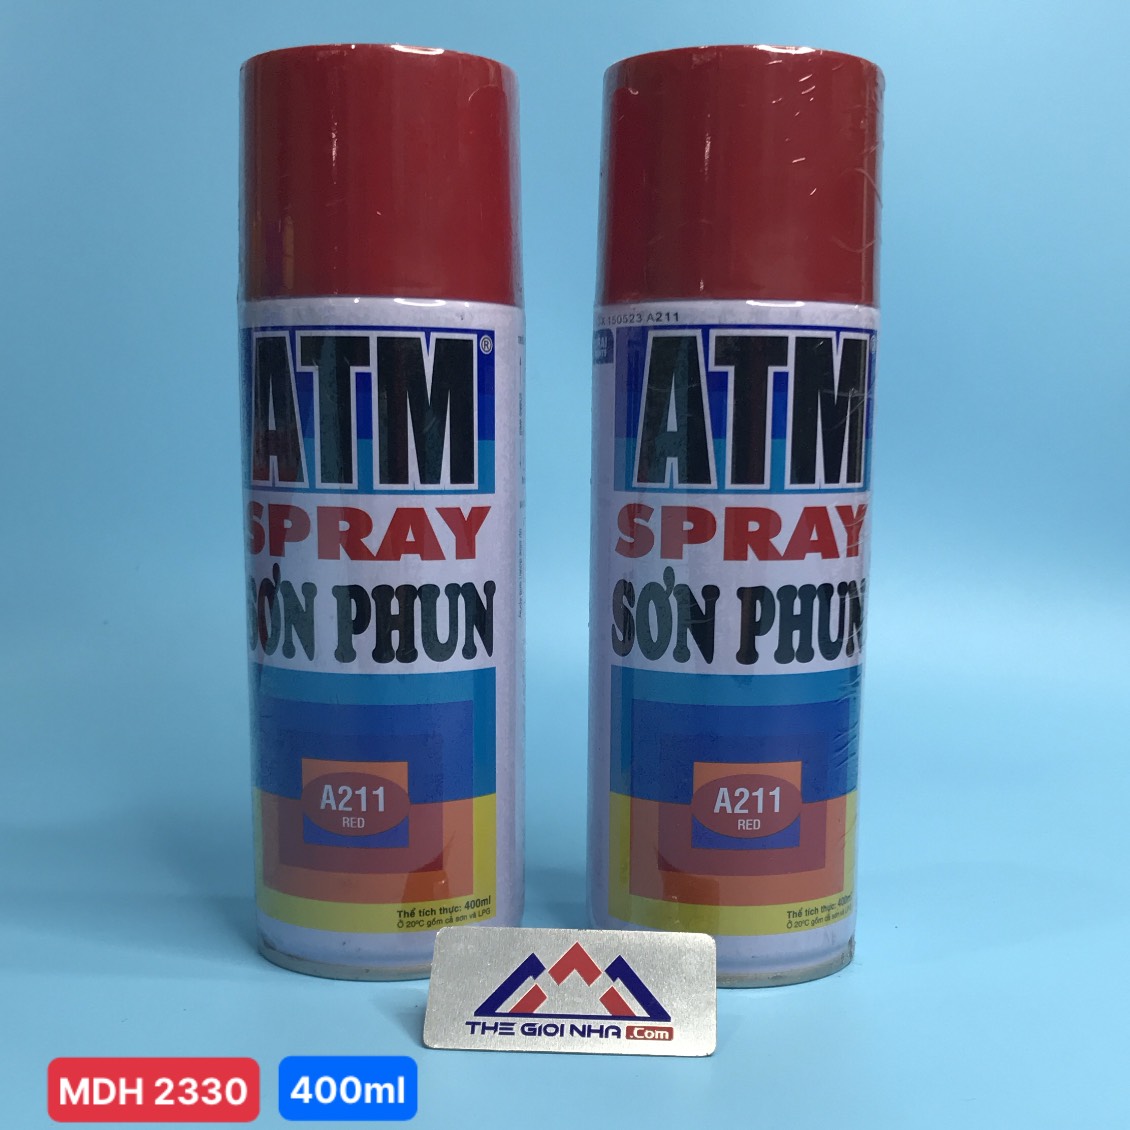 Sơn xịt Atm spray A211 màu đỏ 400ml (red), 12 chai/ 1 thùng